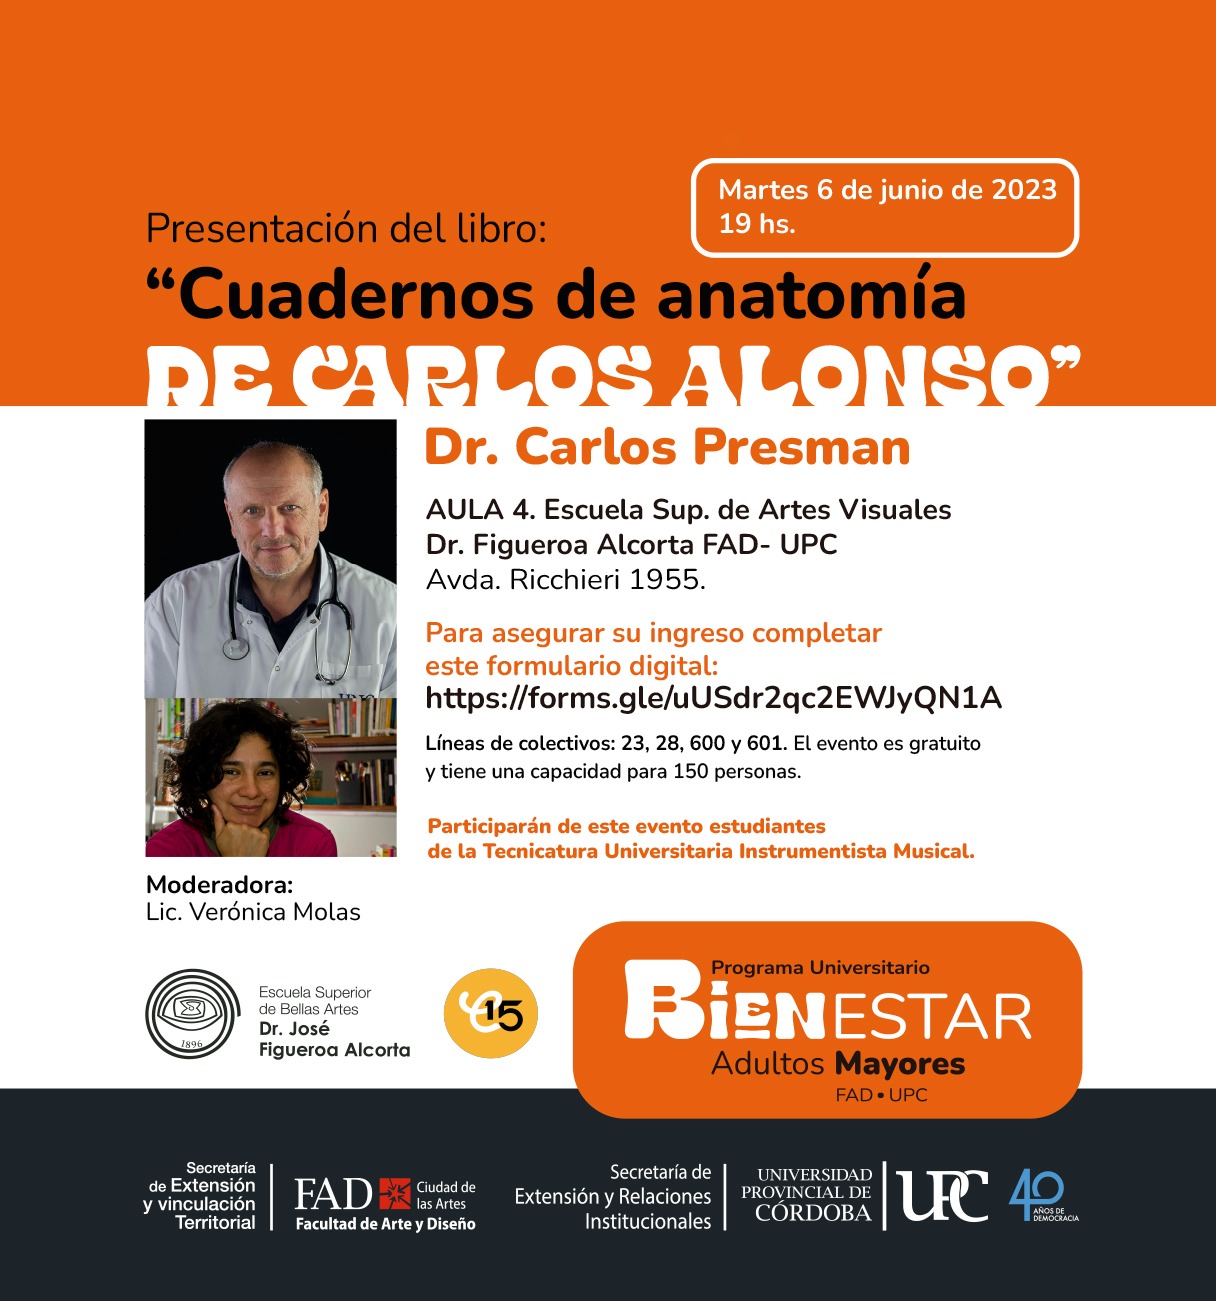 Presentación del libro «Cuadernos de anatomía de Carlos Alonso», de Carlos Presman, en la Universidad Provincial de Córdoba